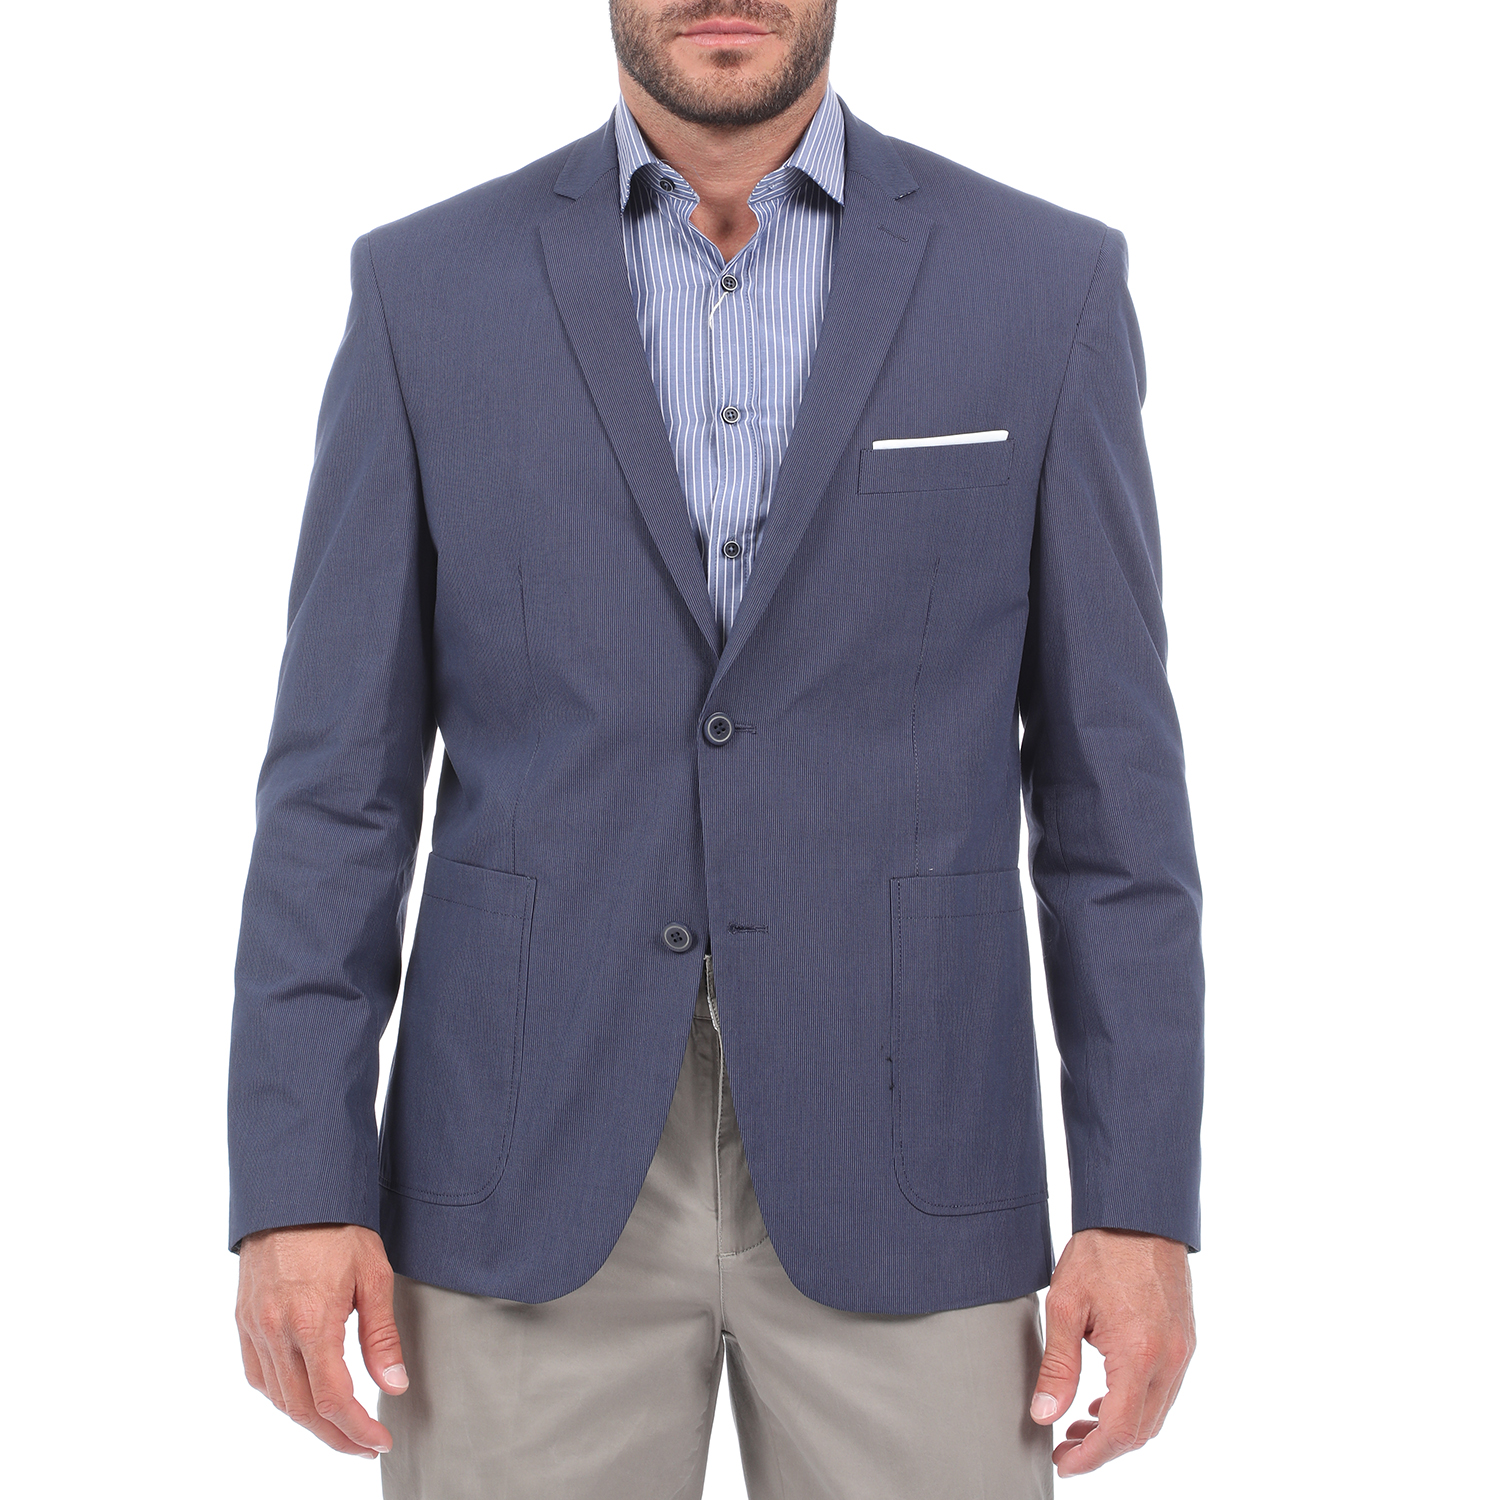 Ανδρικά/Ρούχα/Πανωφόρια/Σακάκια MARTIN & CO - Ανδρικό σακάκι blazer MARTIN & CO SLIM BLAZER μπλε